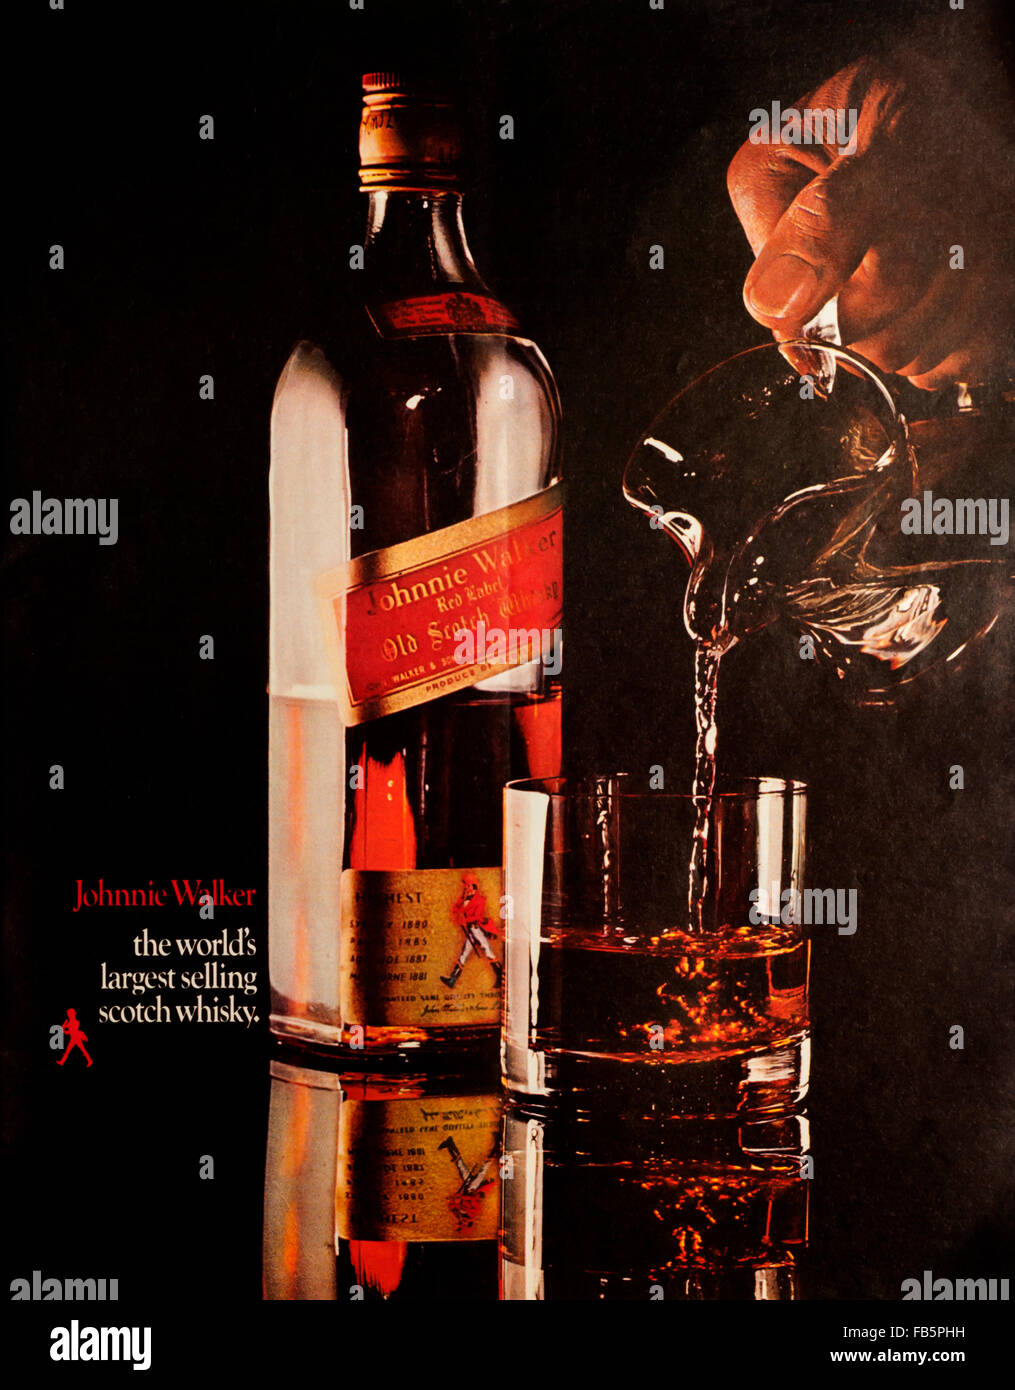 Whisky scotch advert -Fotos und -Bildmaterial in hoher Auflösung - Seite 3  - Alamy